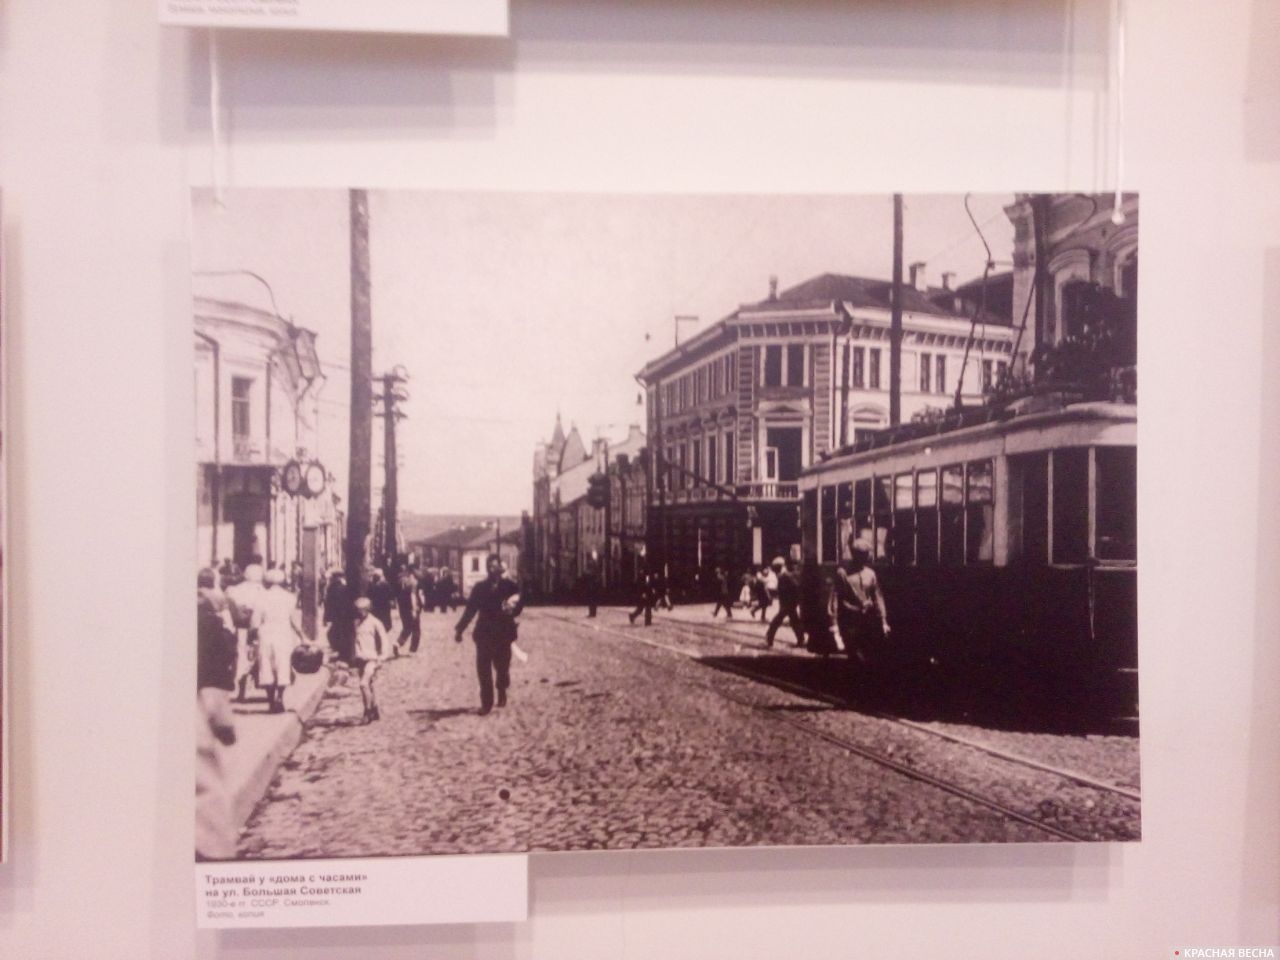 Трамвай у «дома с часами» на ул. Большая Советская. 1930-е гг. Смоленск.